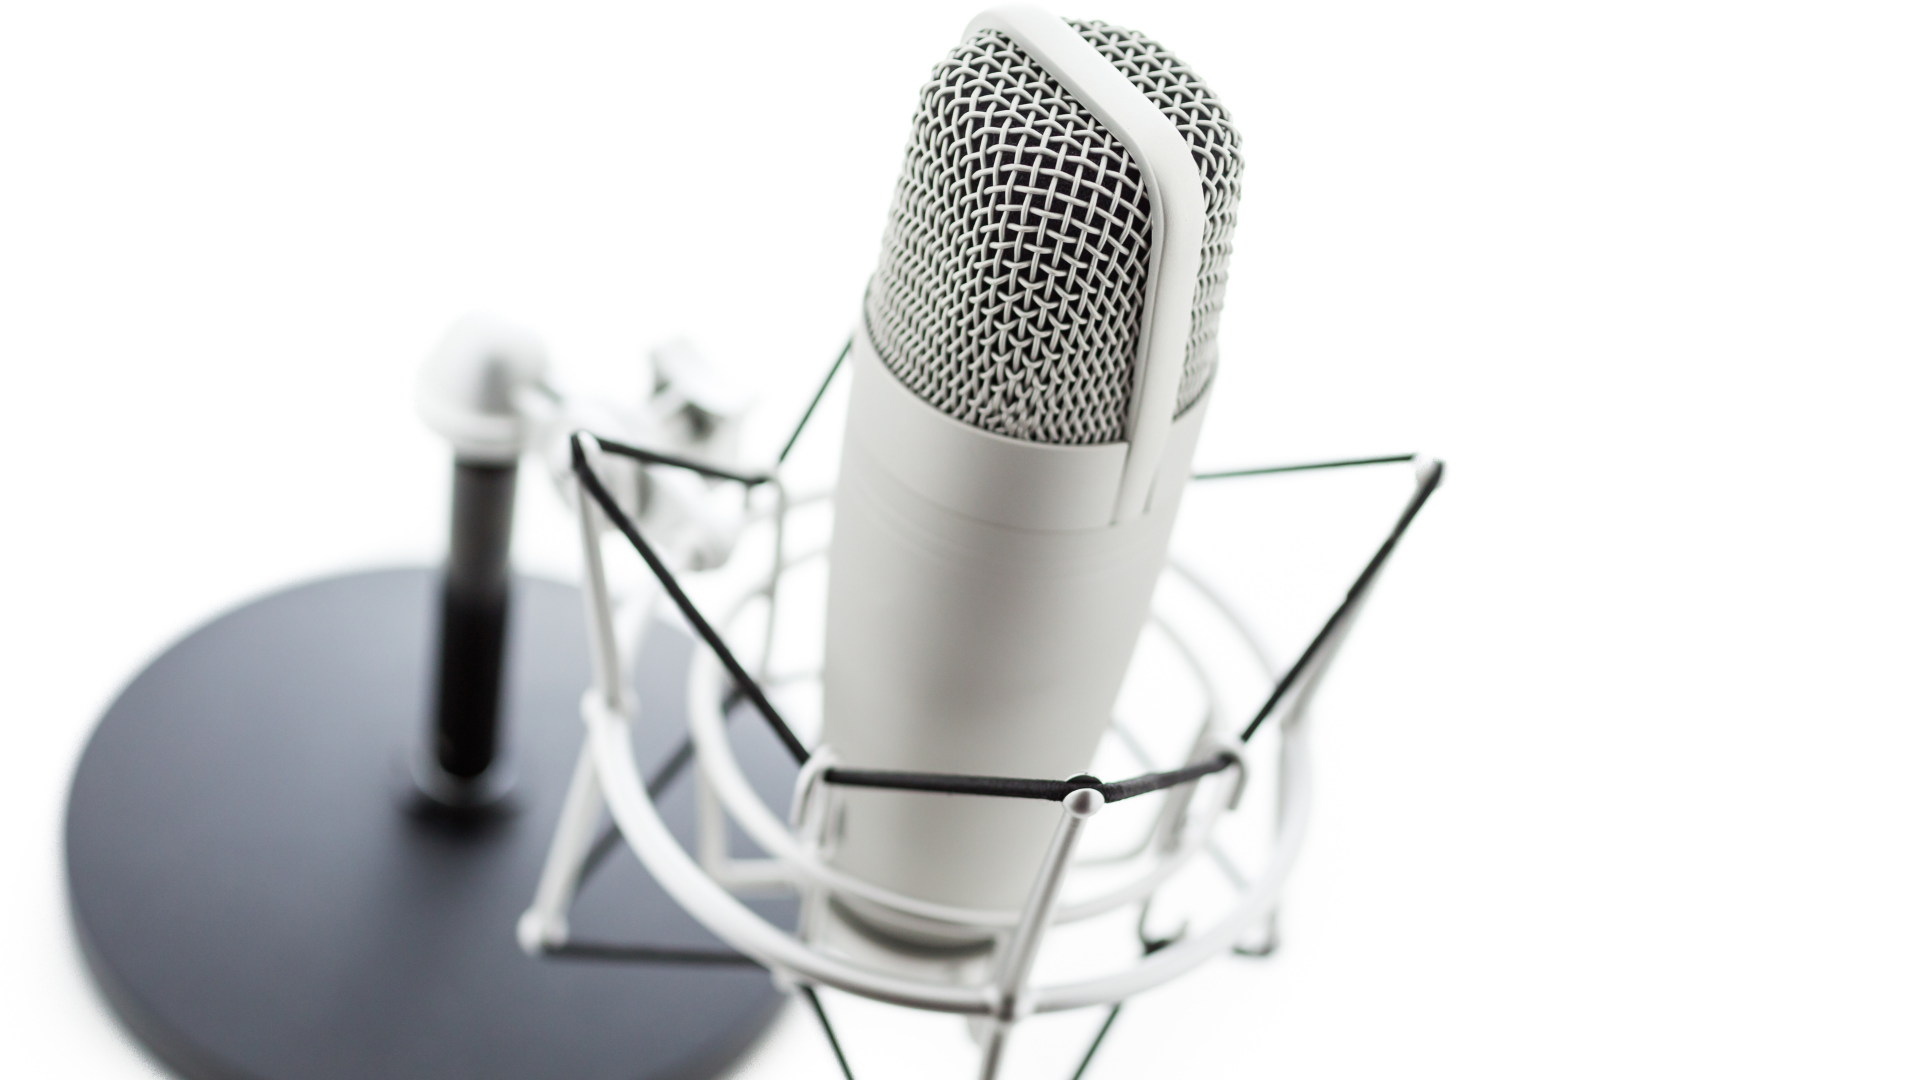 Beste podcast software | Top 7 programma's beoordeeld